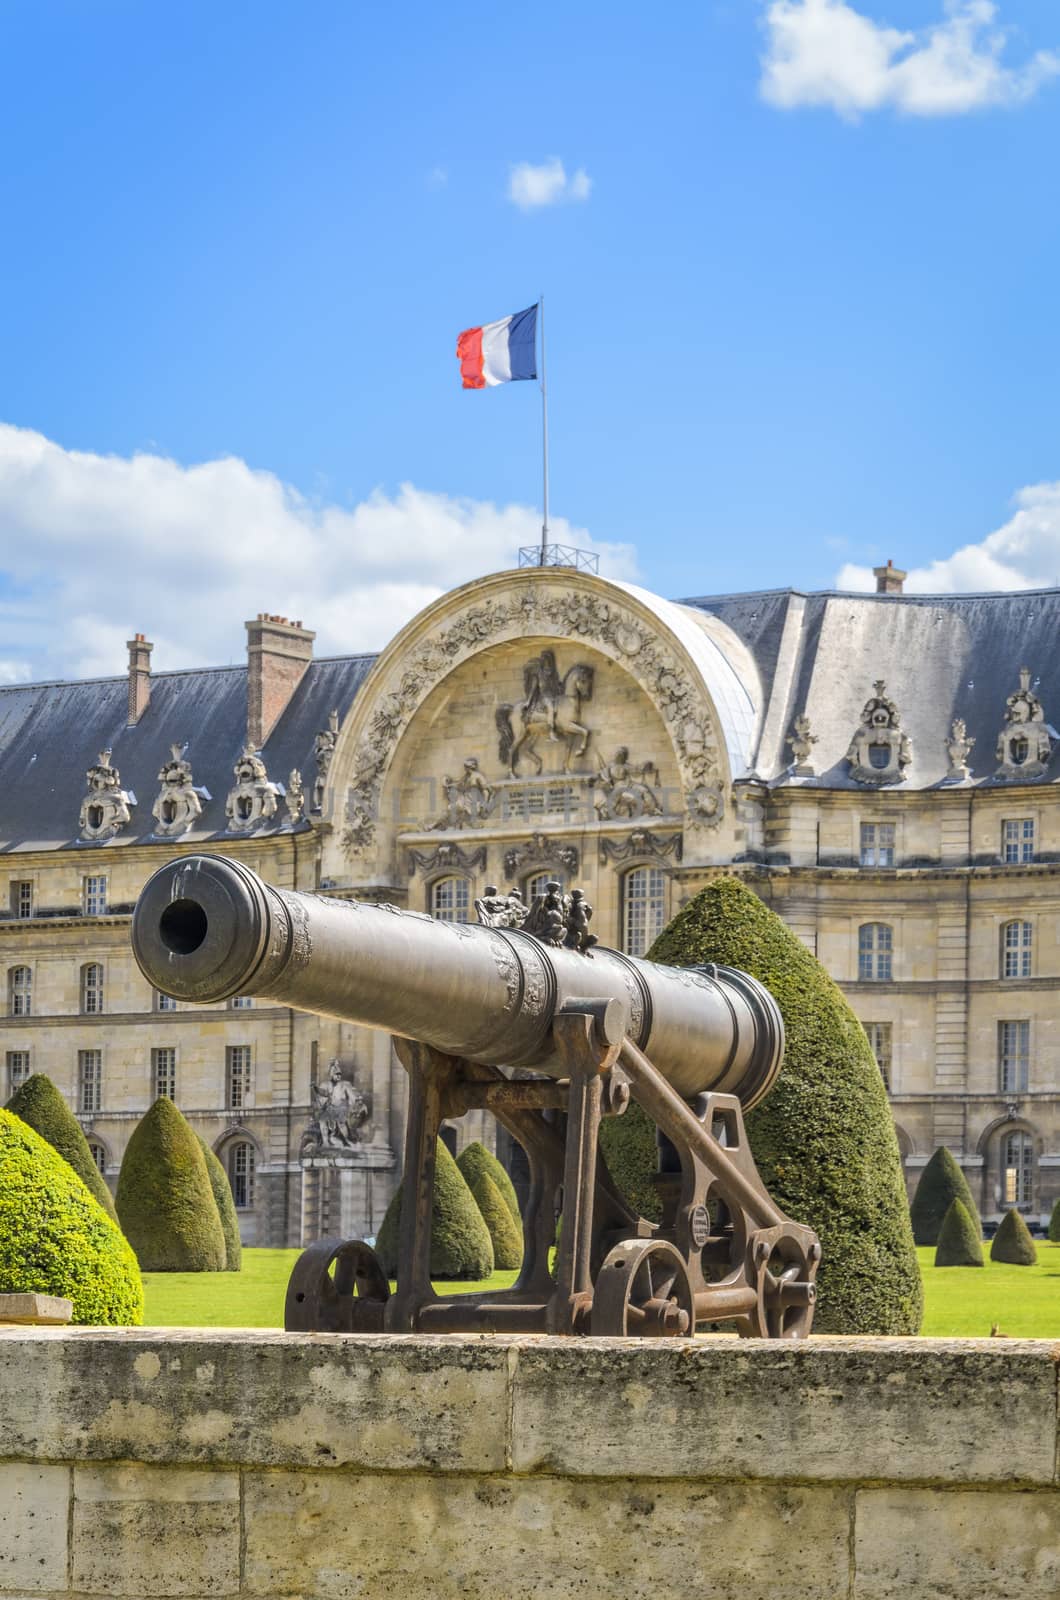 Paris, France - April 18, 2013: Artillery cannons at Les Invalides in Paris, France